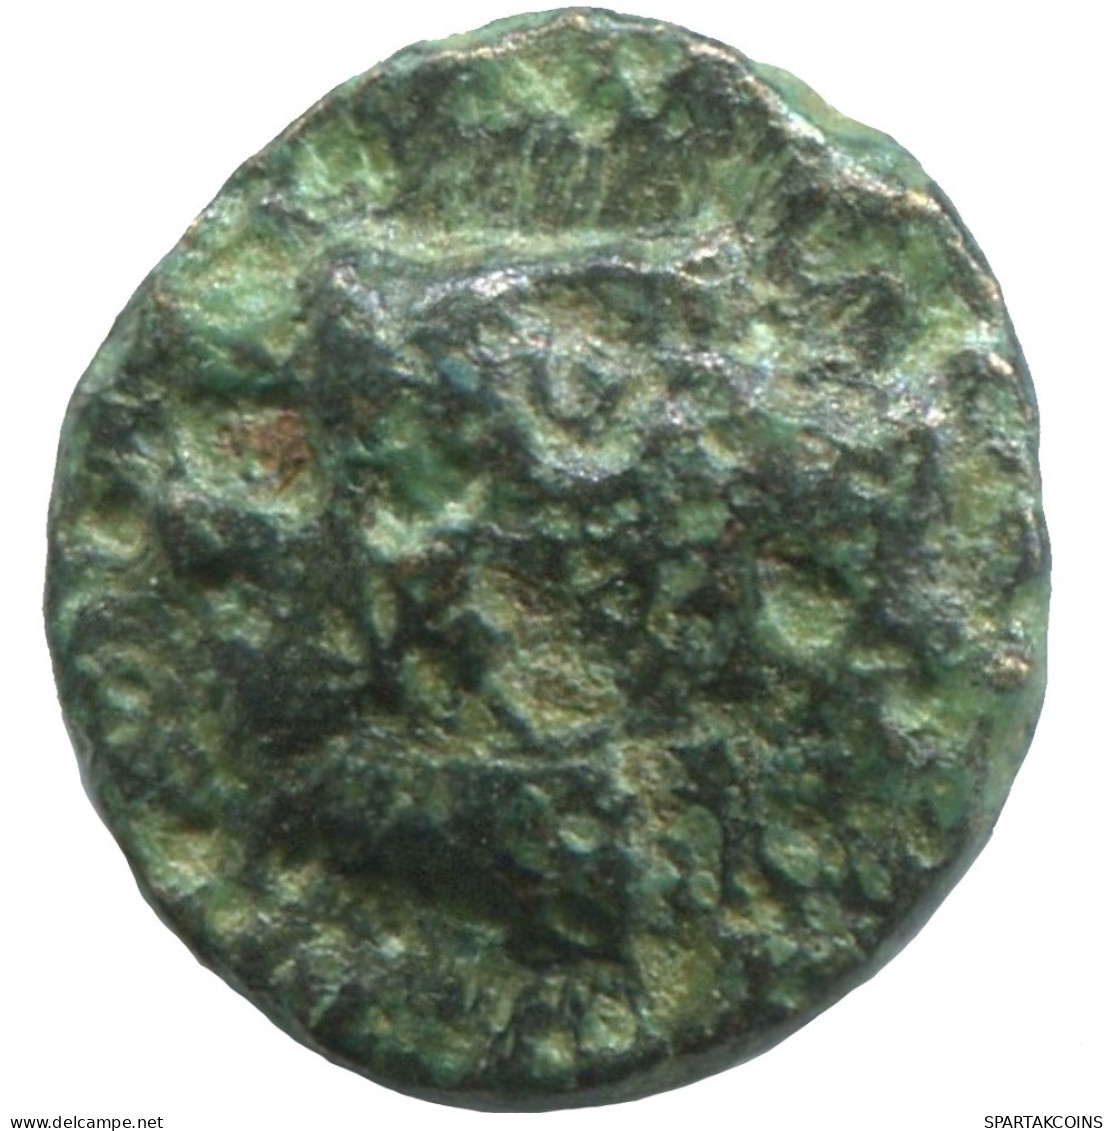 BOW Ancient Authentic GREEK Coin 1g/10mm #SAV1380.11.U.A - Griechische Münzen